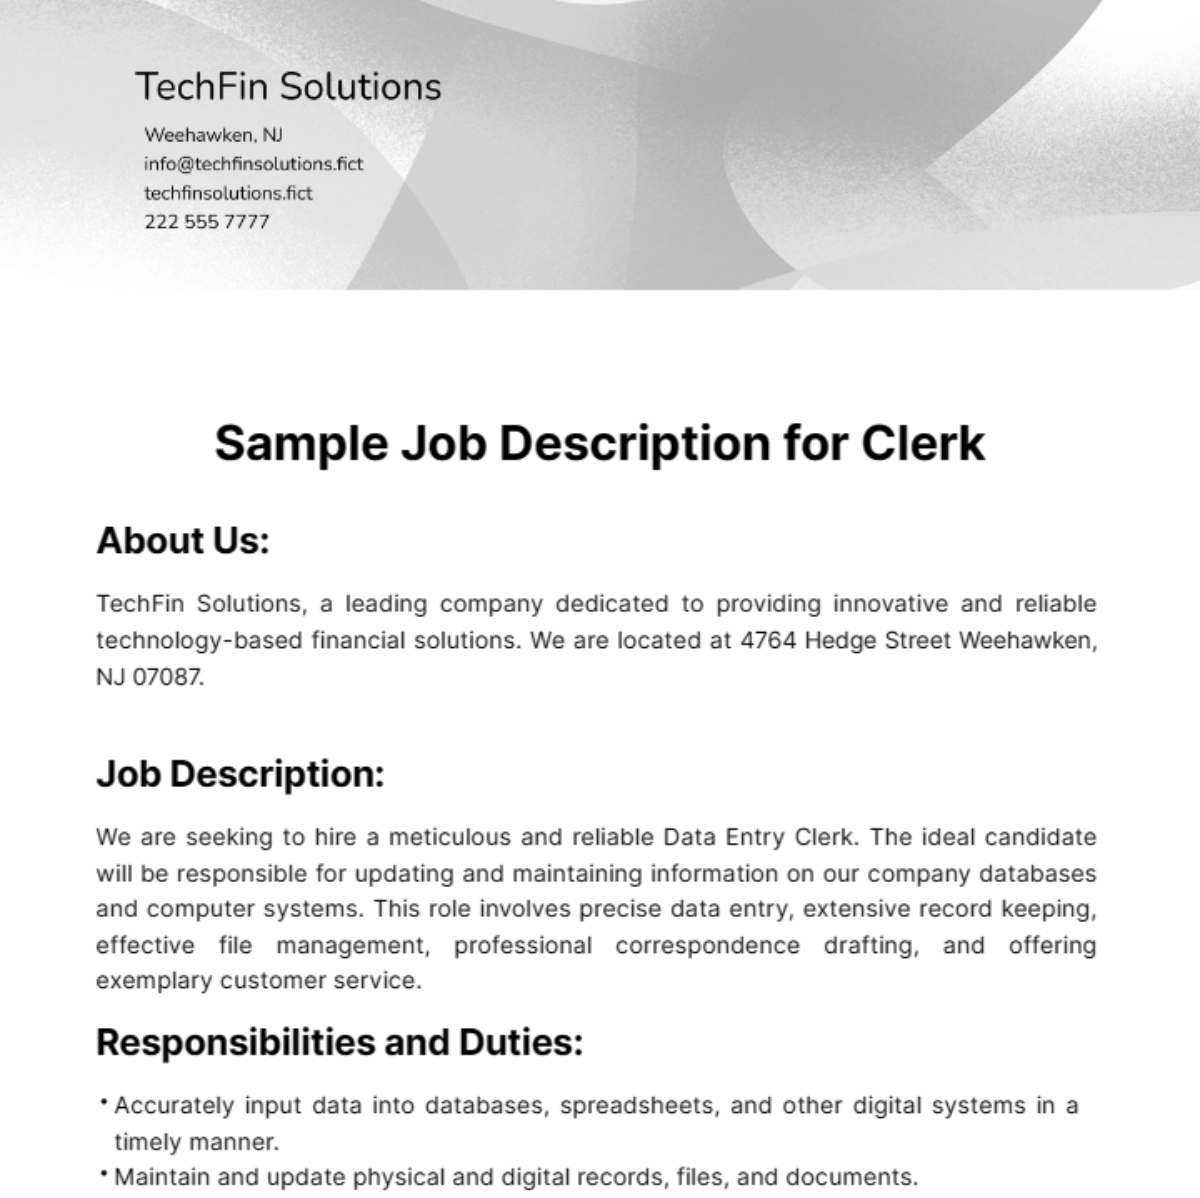 Sample Job Description for Clerk Template